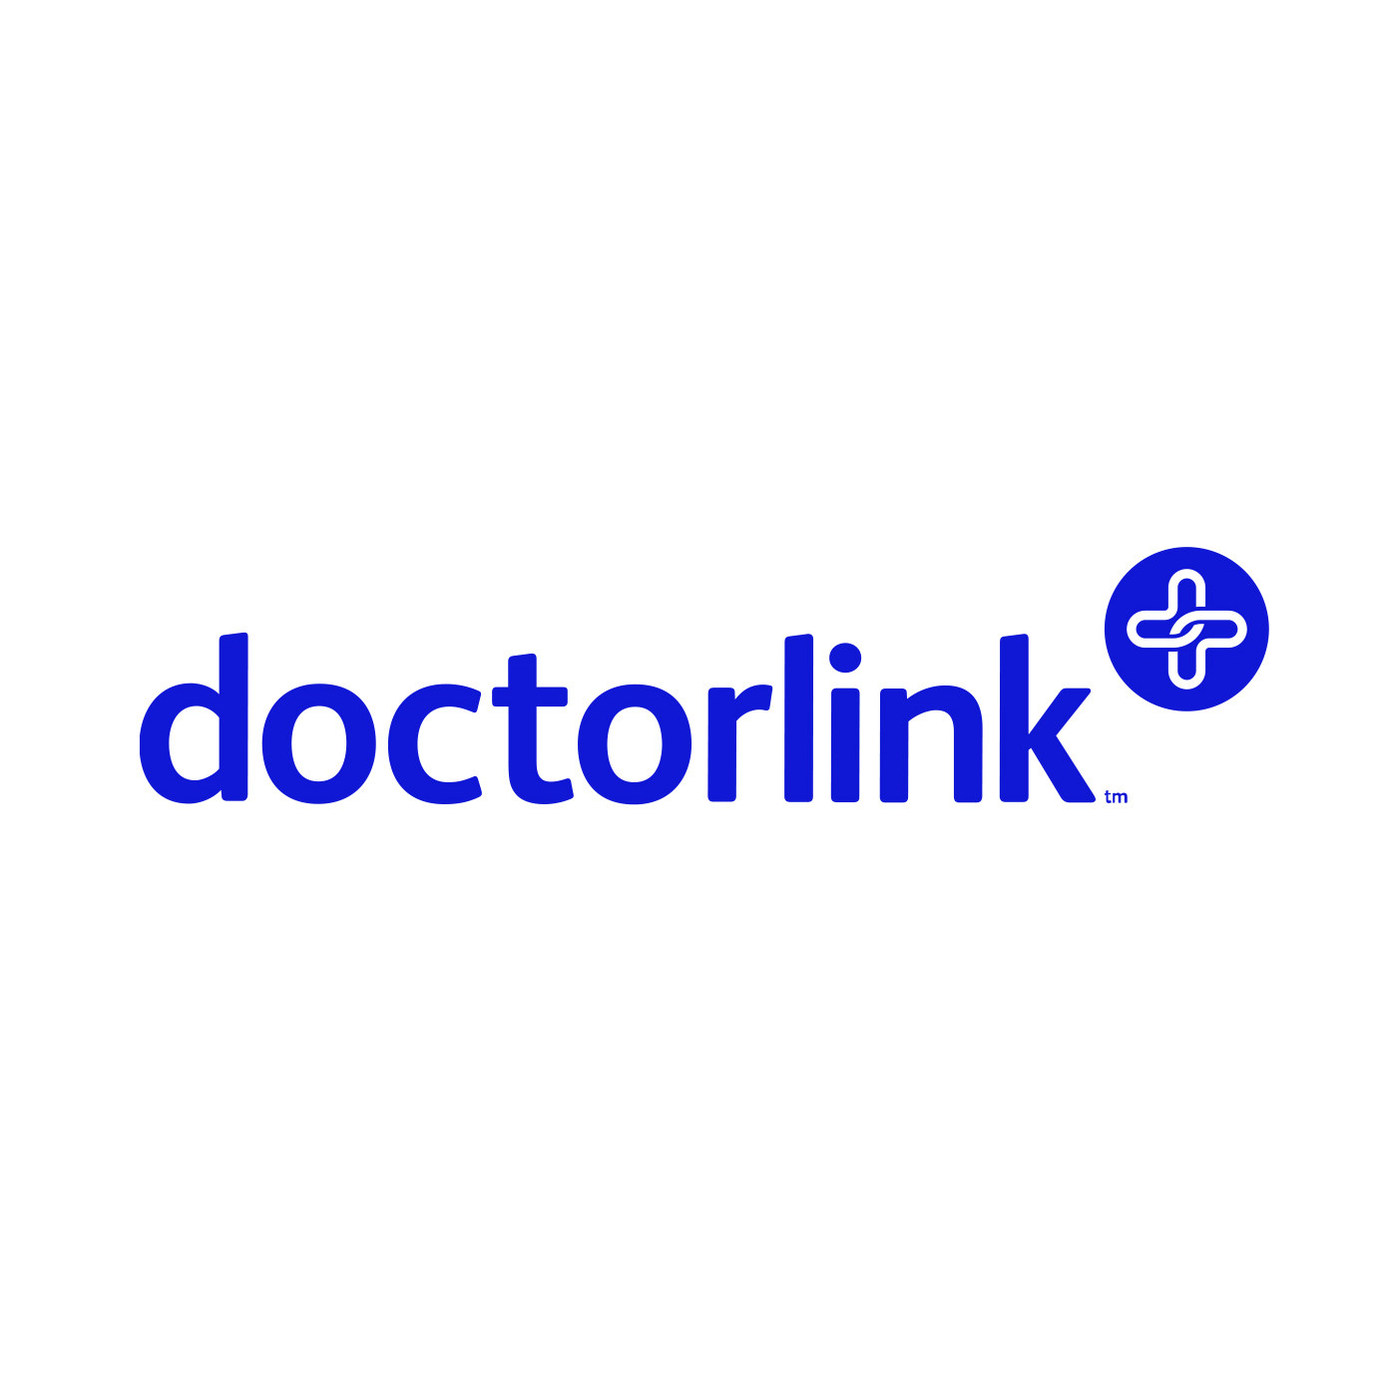 Doctorlink